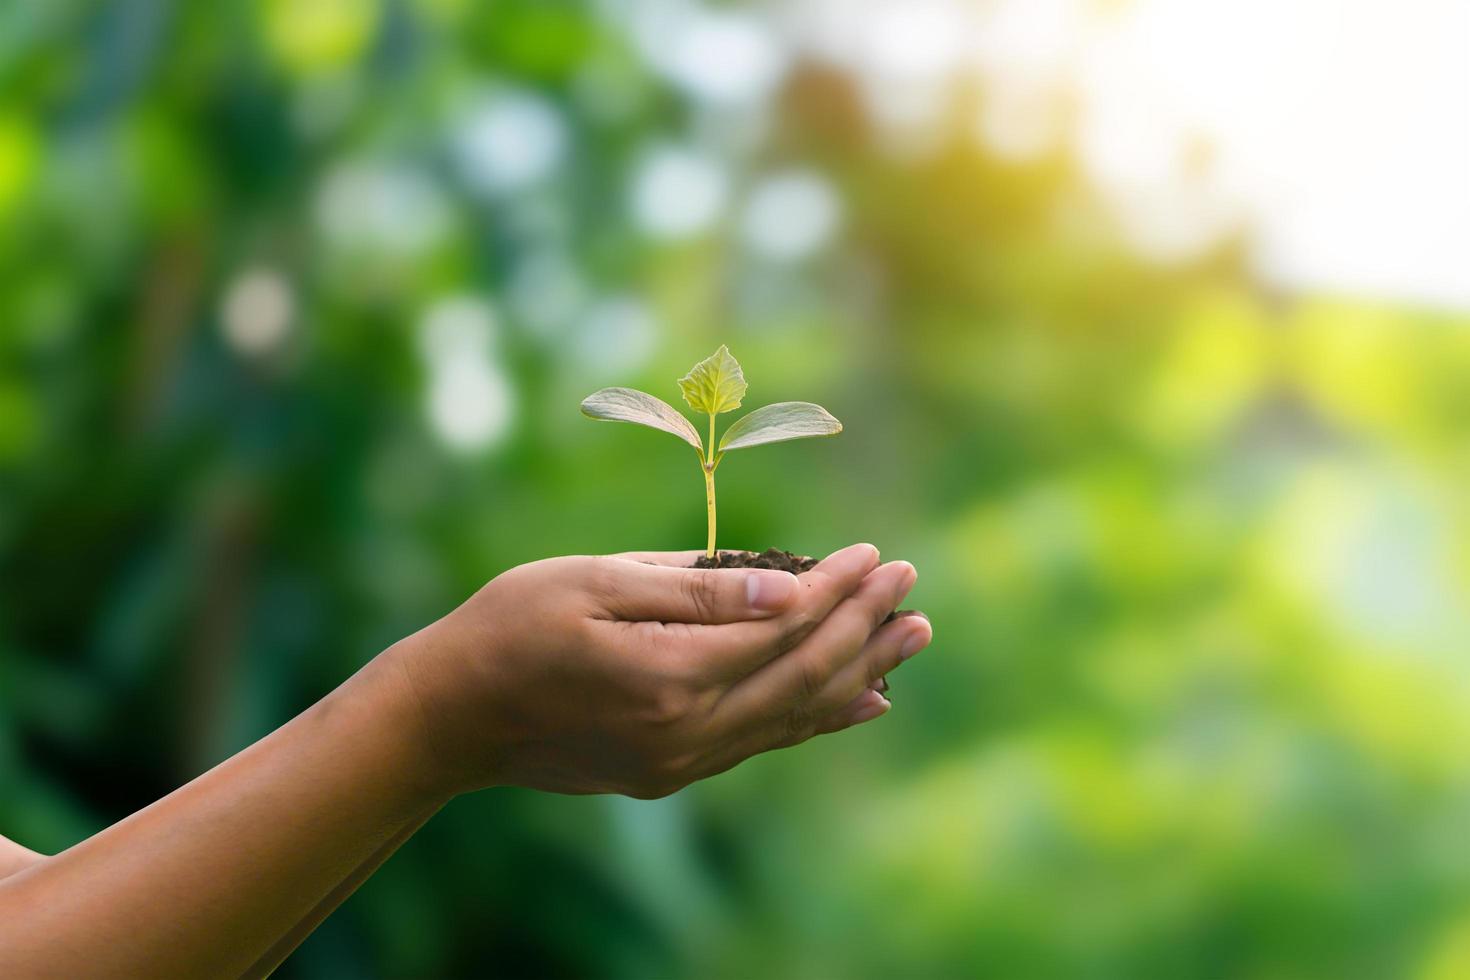 árbol en crecimiento en una mano humana y en un fondo verde y soleado concepto ecológico tarjeta del día de la tierra proteger el medio ambiente mantener el mundo limpio foto